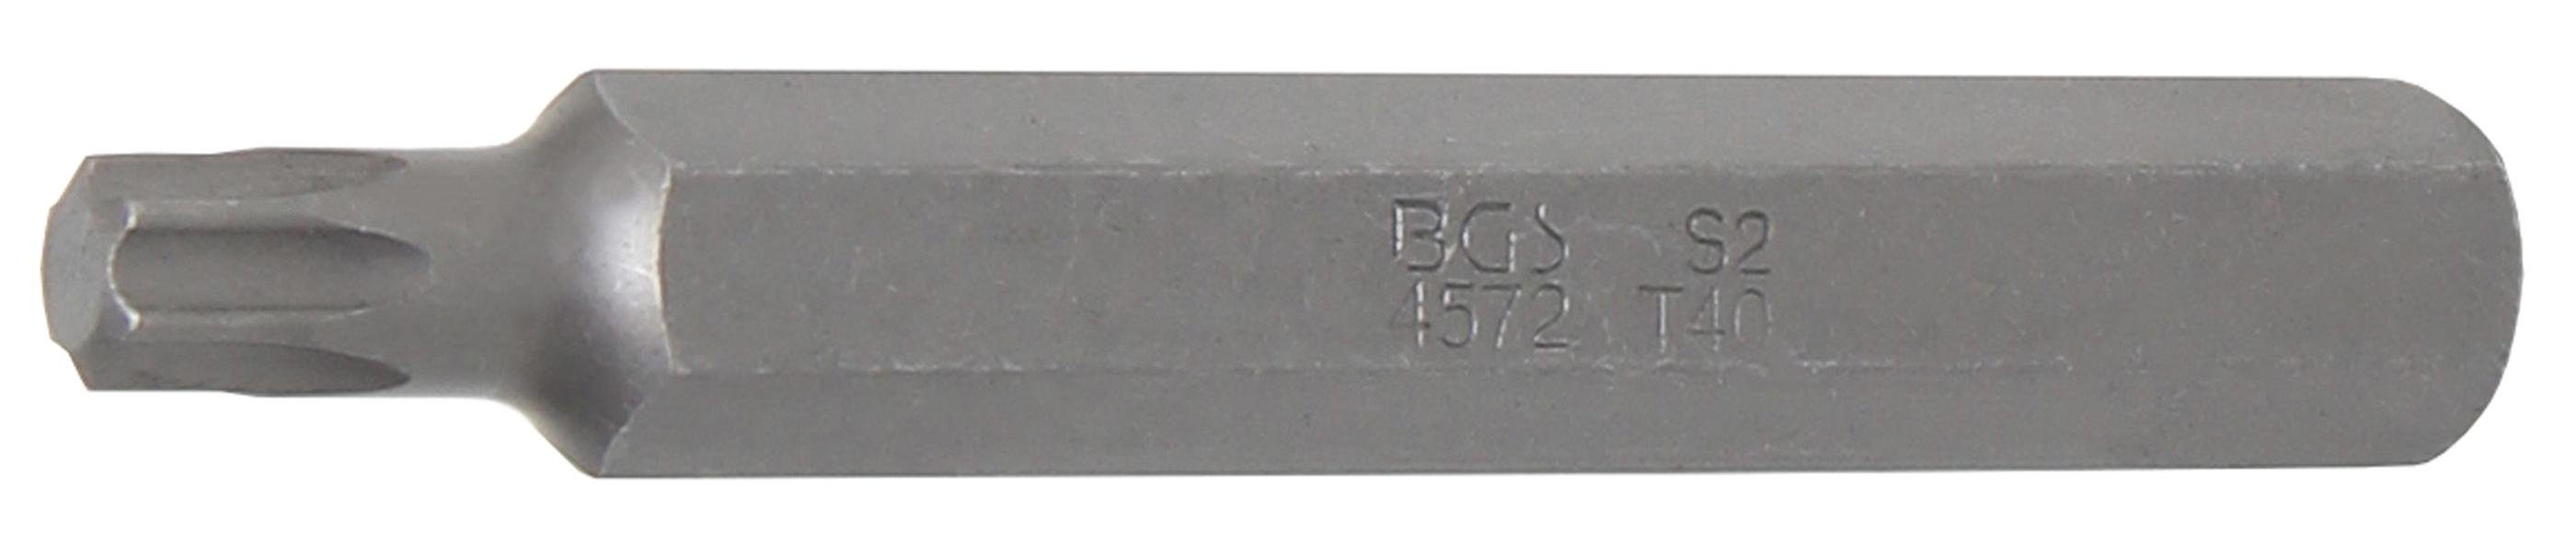 BGS technic Bit-Schraubendreher Bit, Länge 75 mm, Antrieb Außensechskant 10 mm (3/8), T-Profil (für Torx) T40